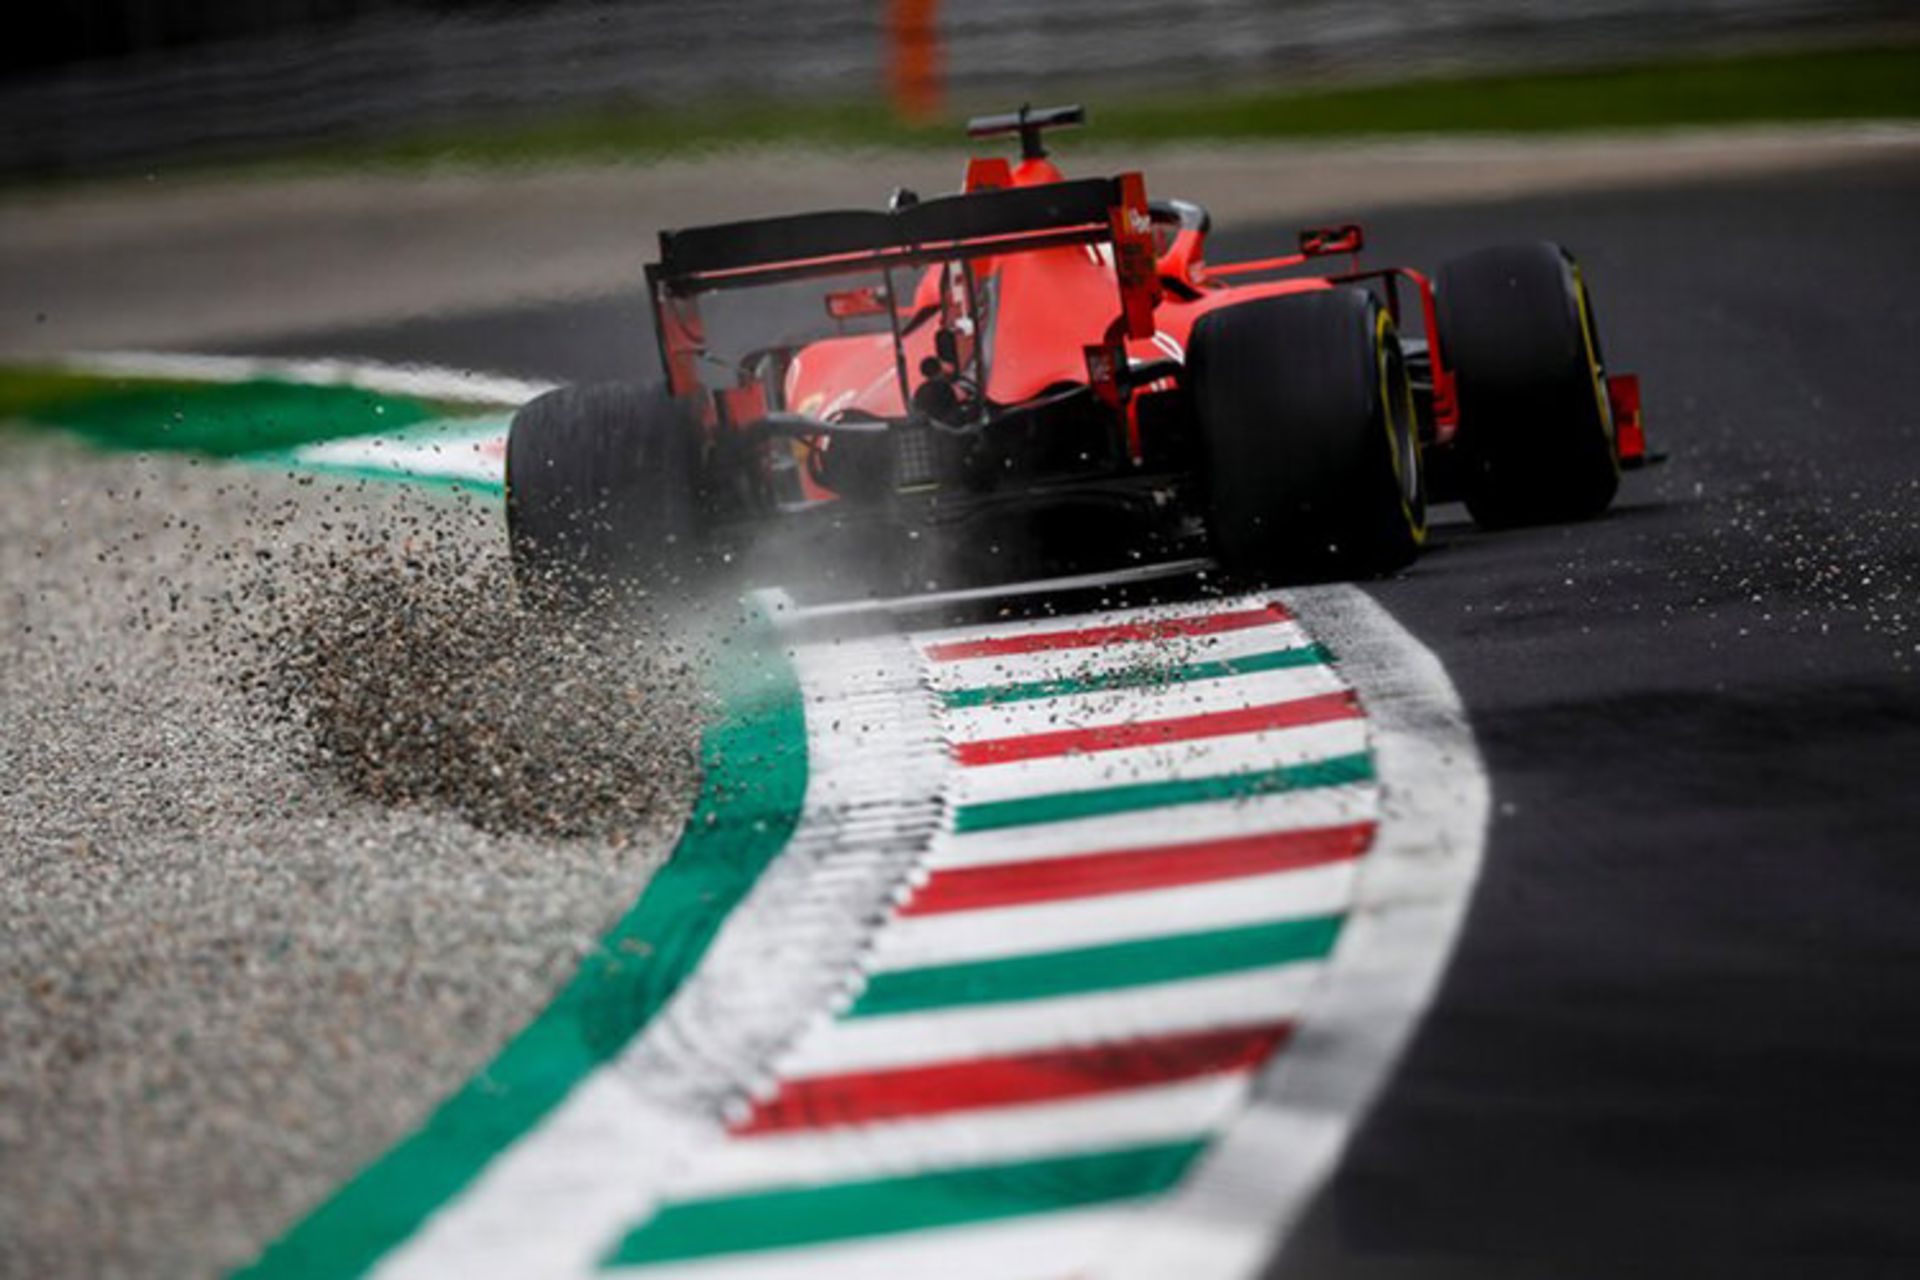 مرجع متخصصين ايران 2019 italian formula one grand prix / گرندپري فرمول يك ايتاليا